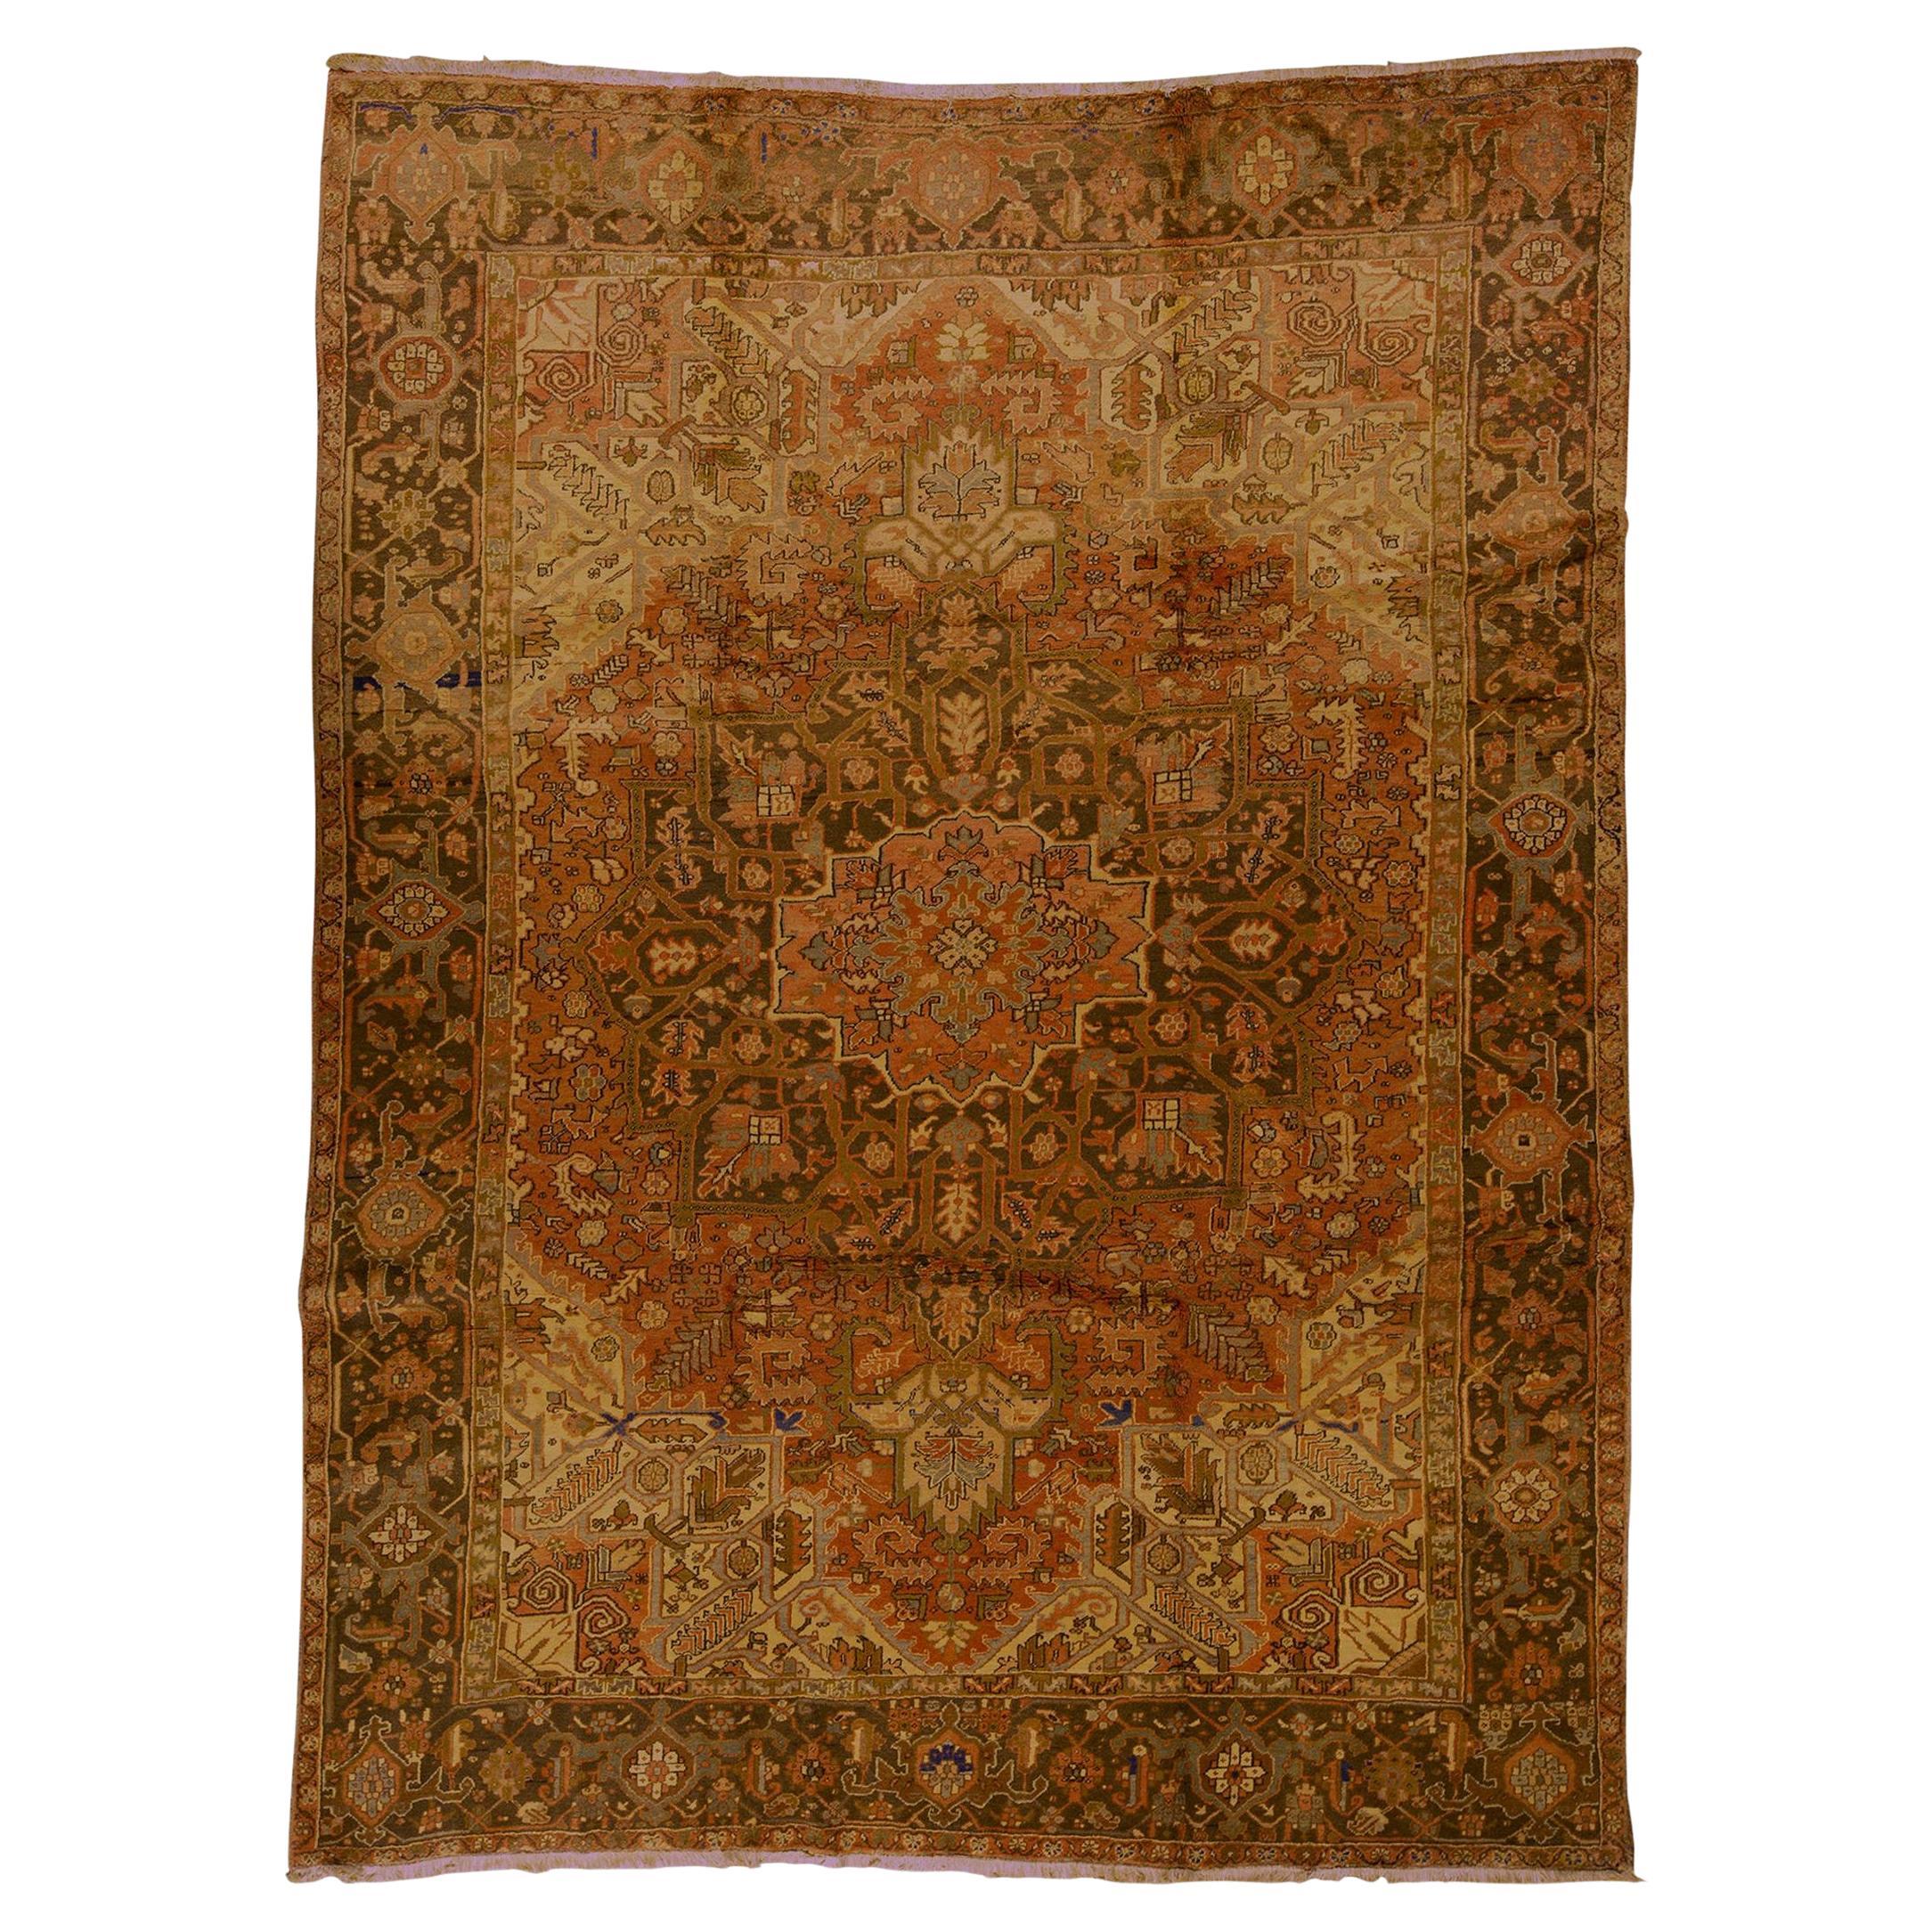   Ancien tapis persan traditionnel tissé à la main en laine de luxe rouille / marron